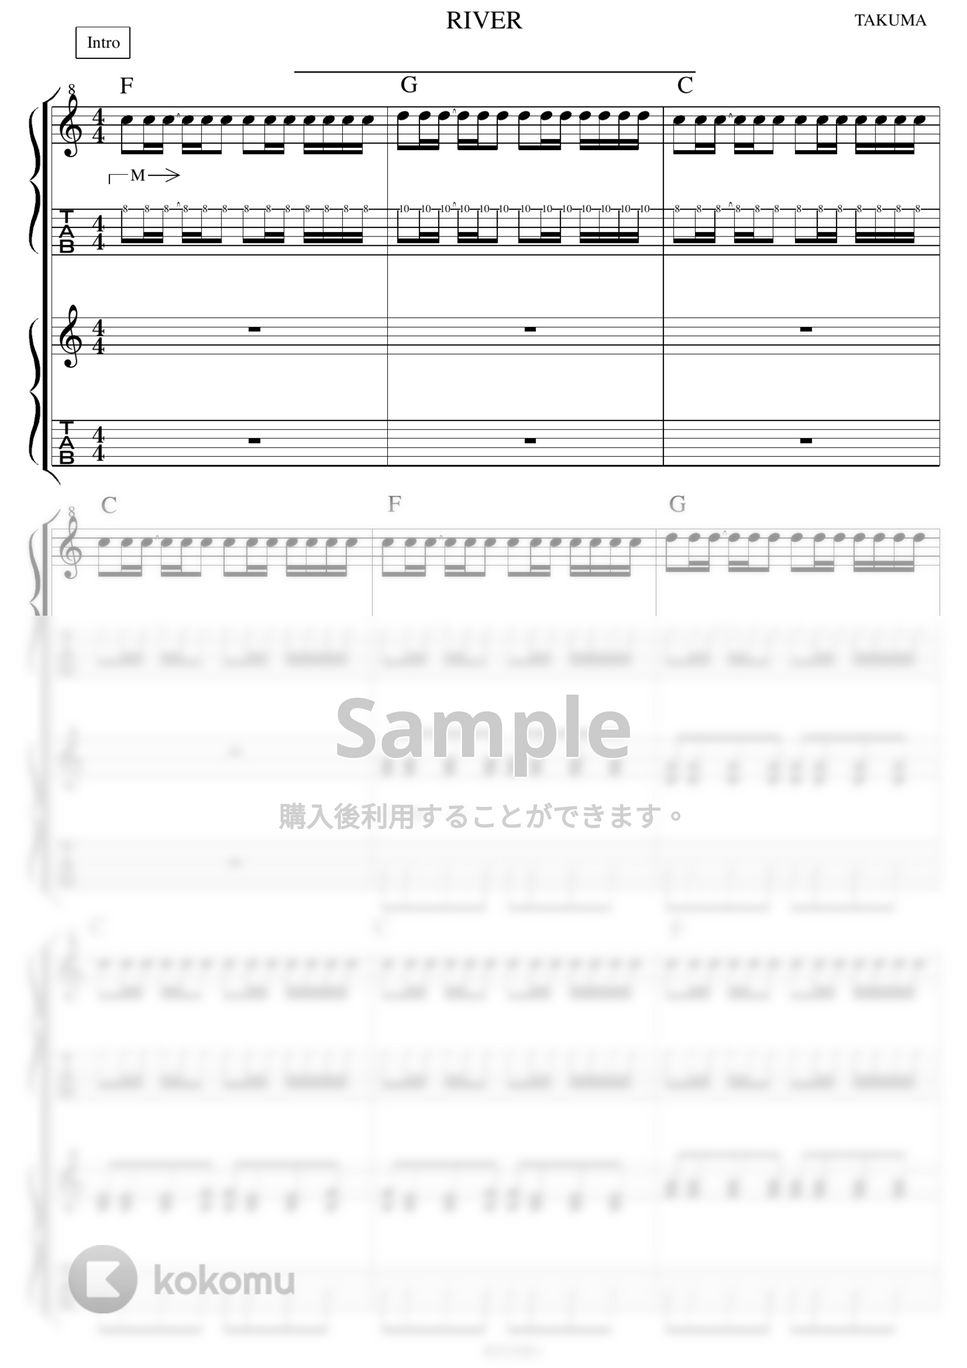 10-FEET - 10-FEET人気曲5セット ギター演奏動画付TAB譜 by バイトーン音楽教室